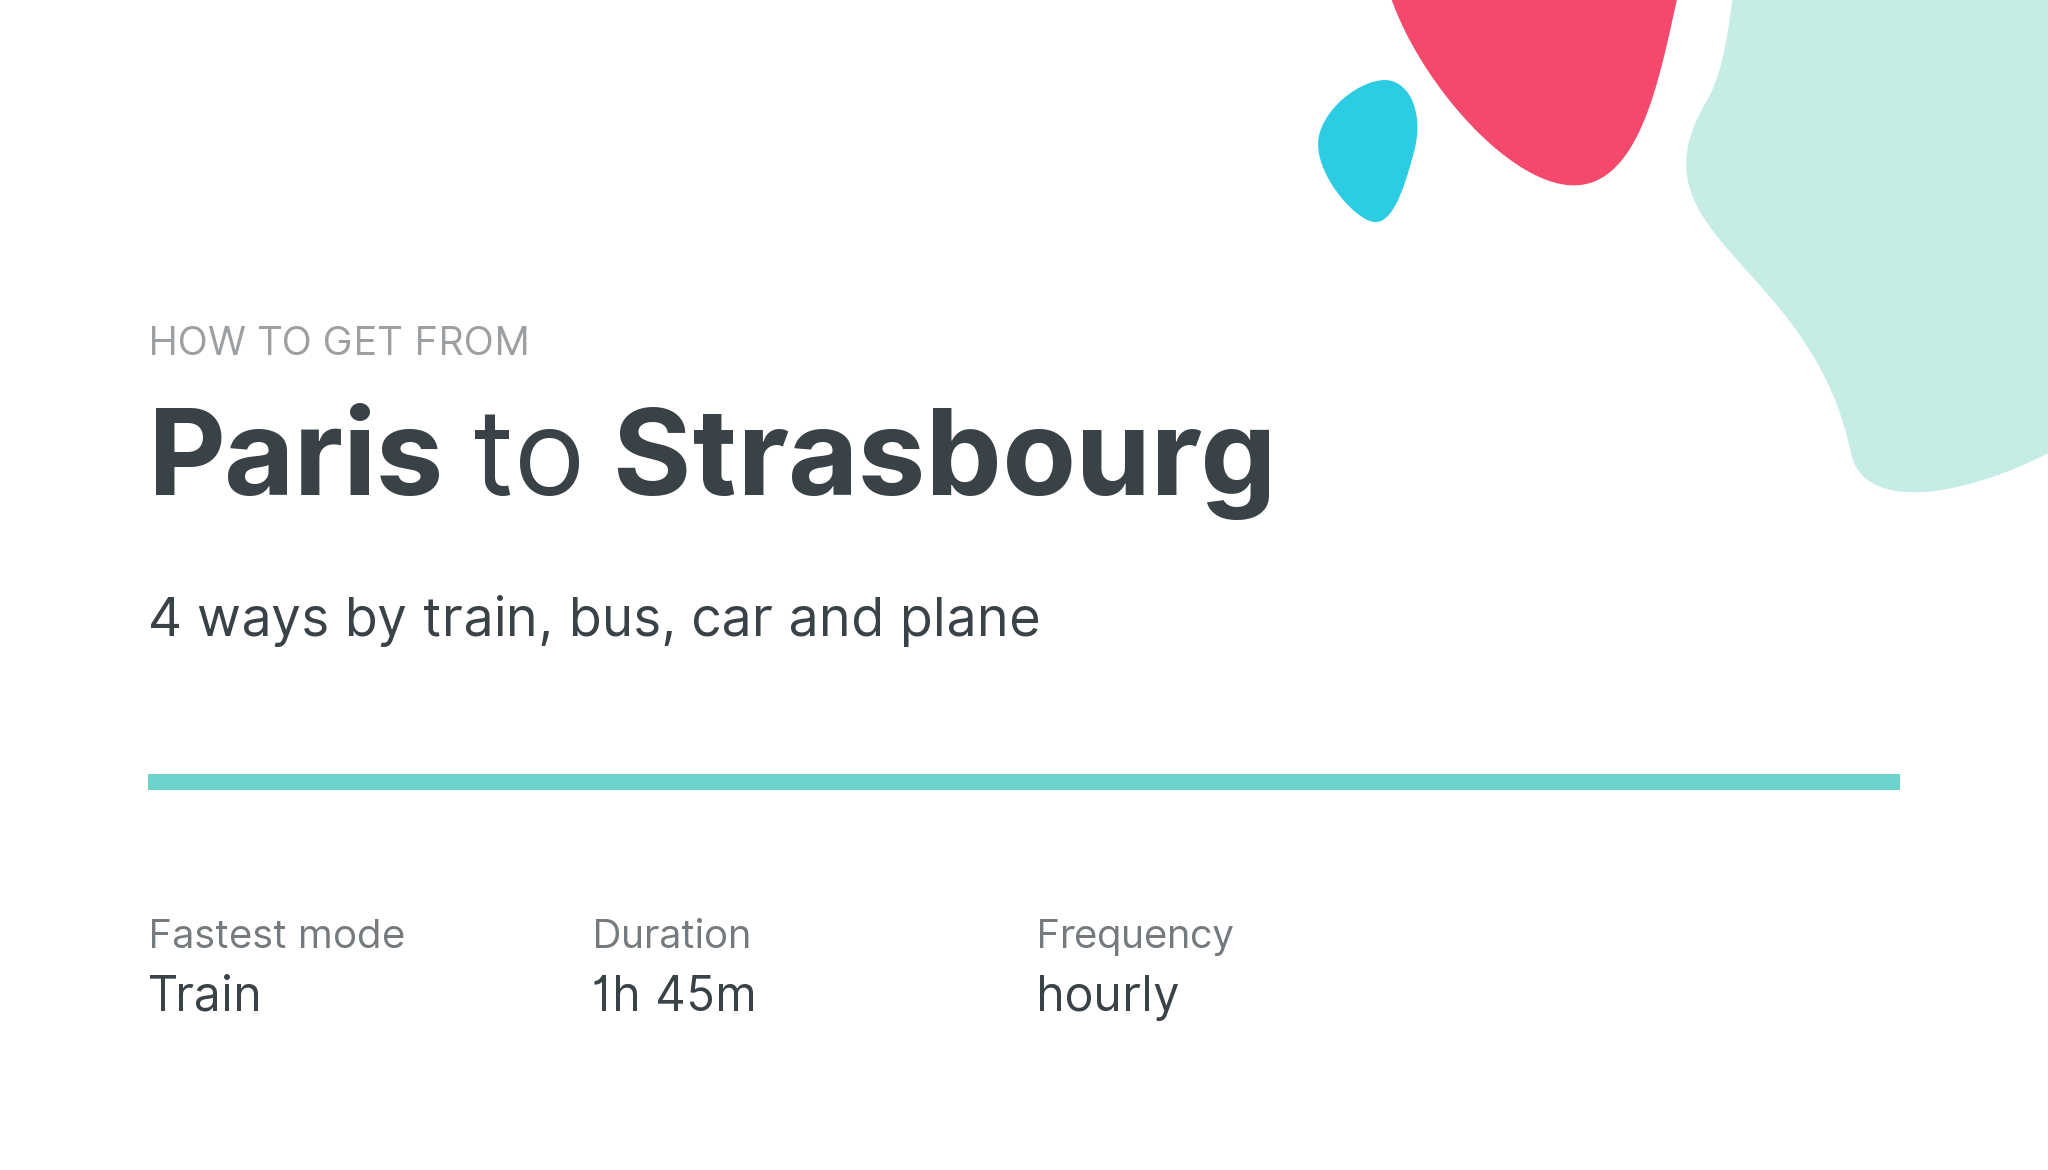 How do I get from Paris to Strasbourg